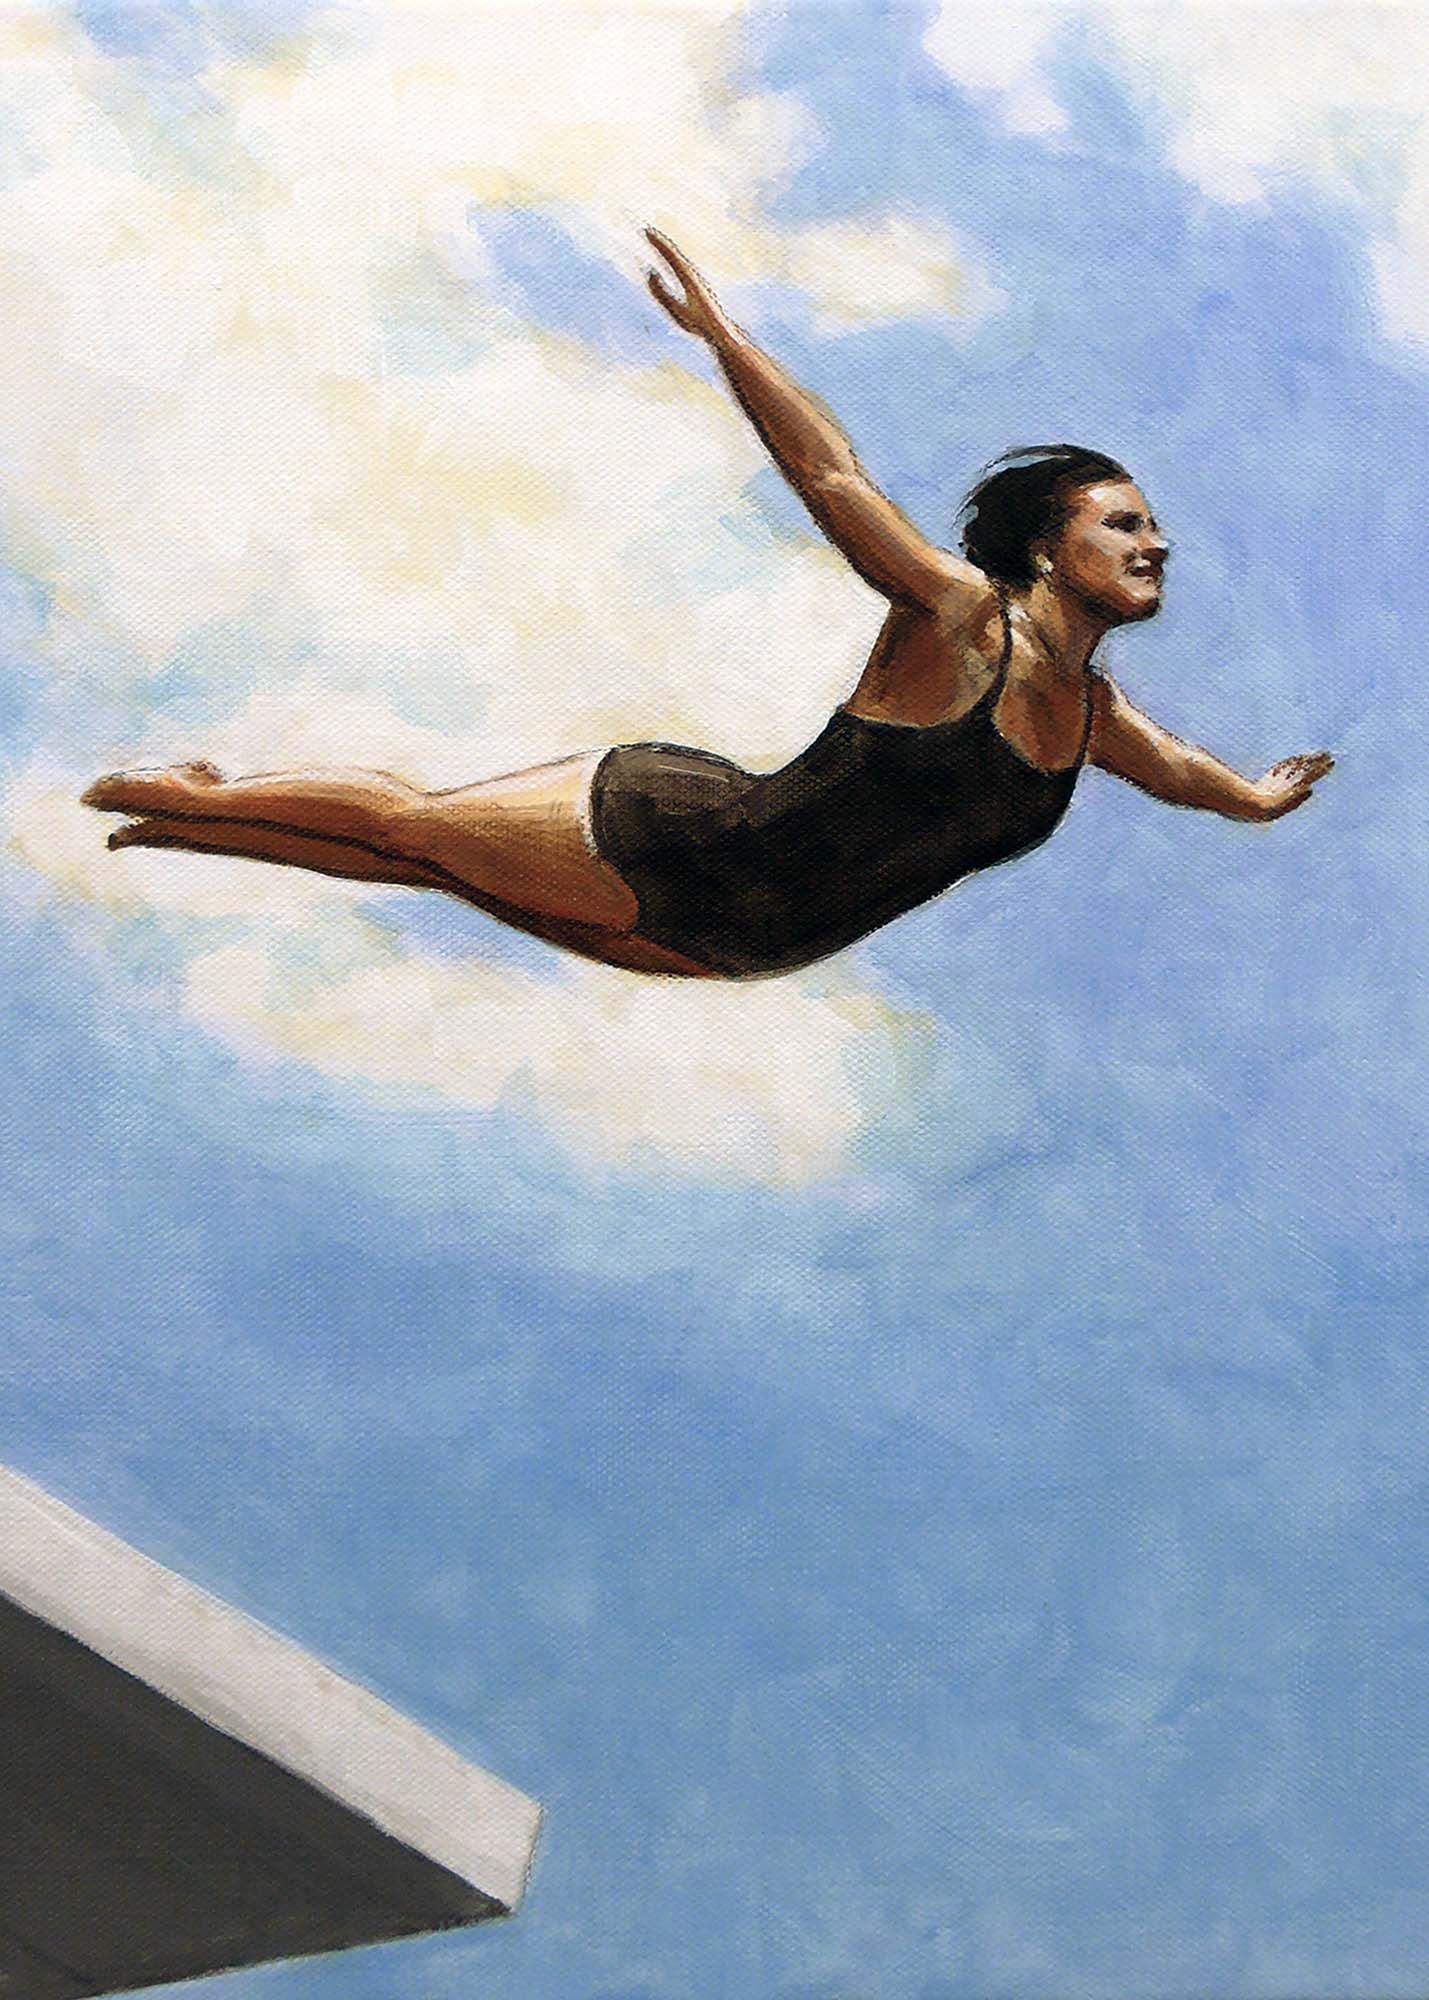 Woman diving off a platform | © Sarah Morrissette